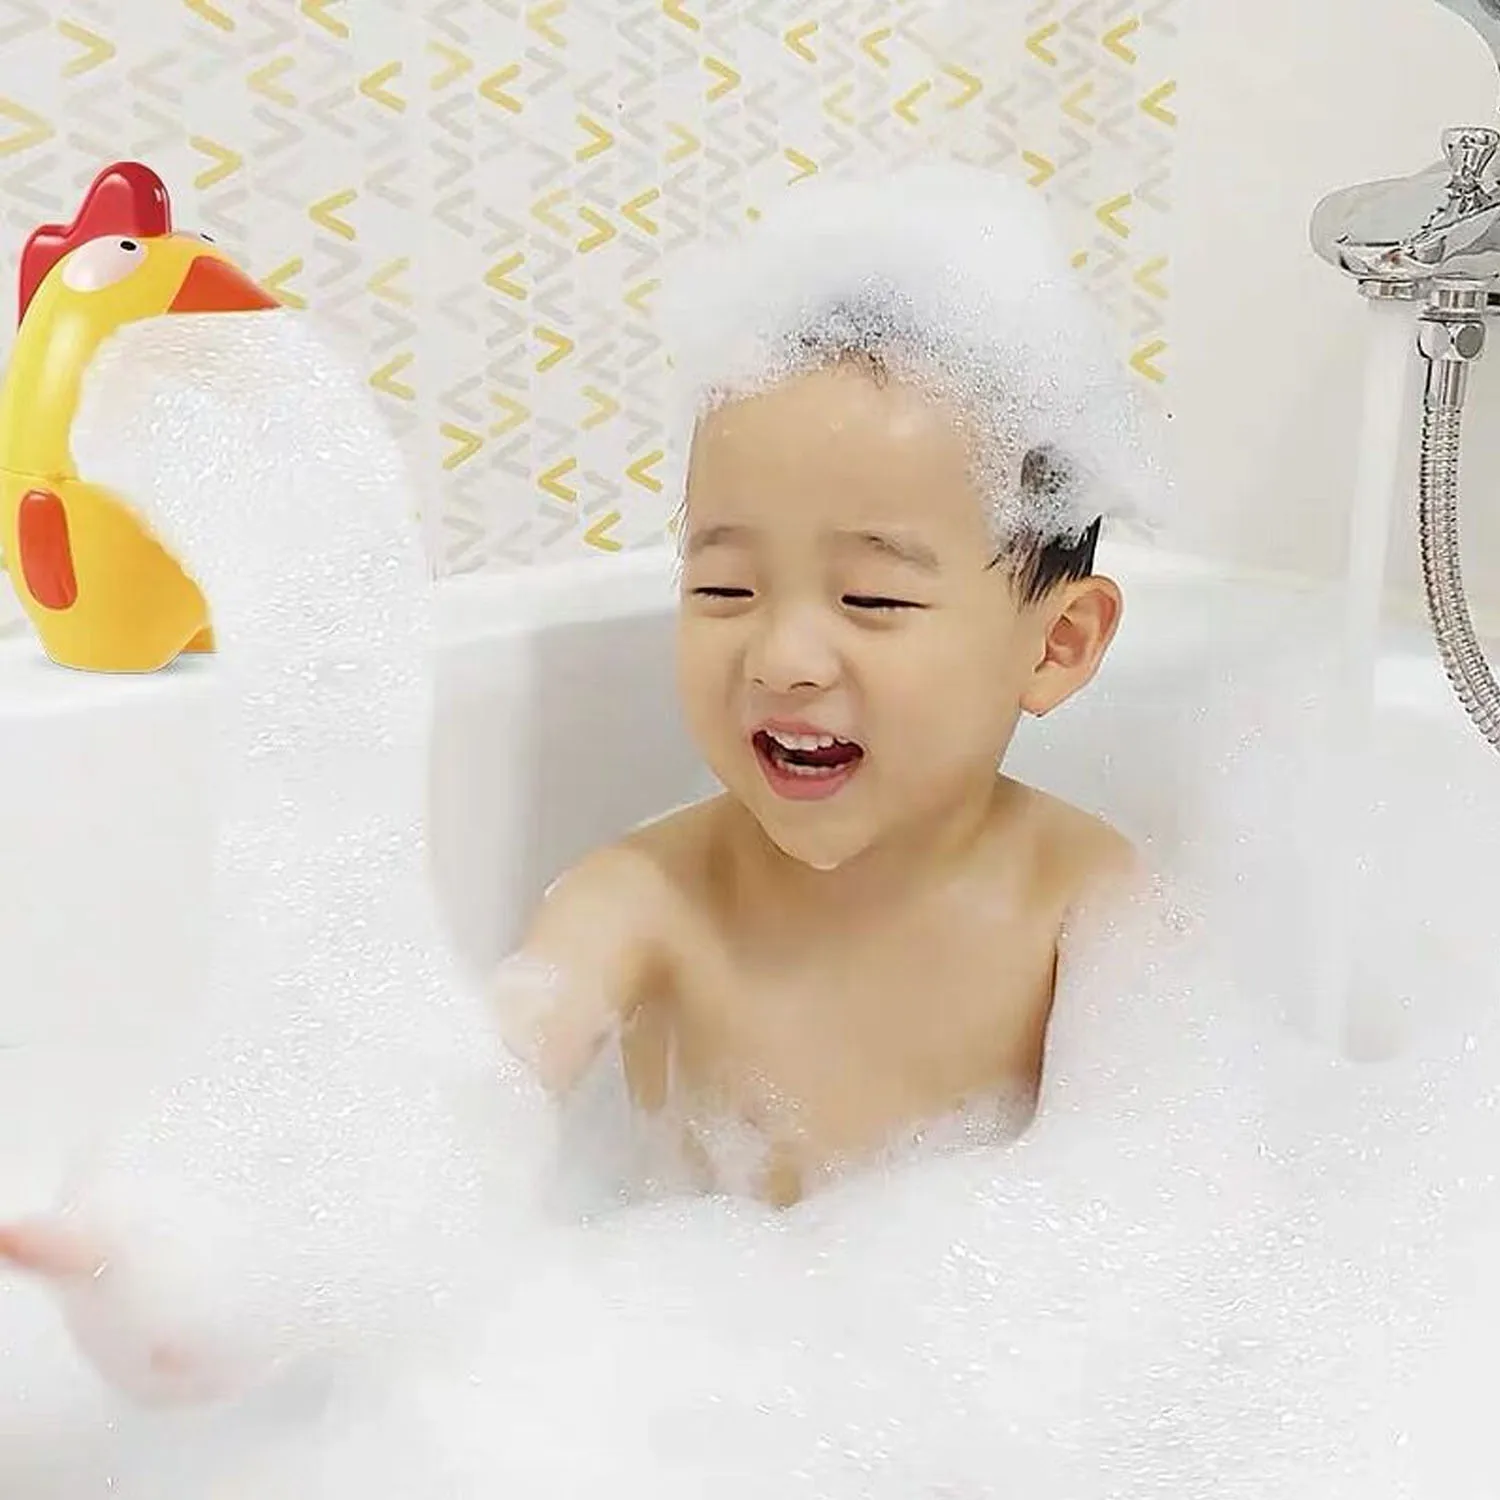 Забавная милая форма животных анти-заглатывание устройство для мыльных пузырей игрушка воздуходувка для детей малышей ванная комната